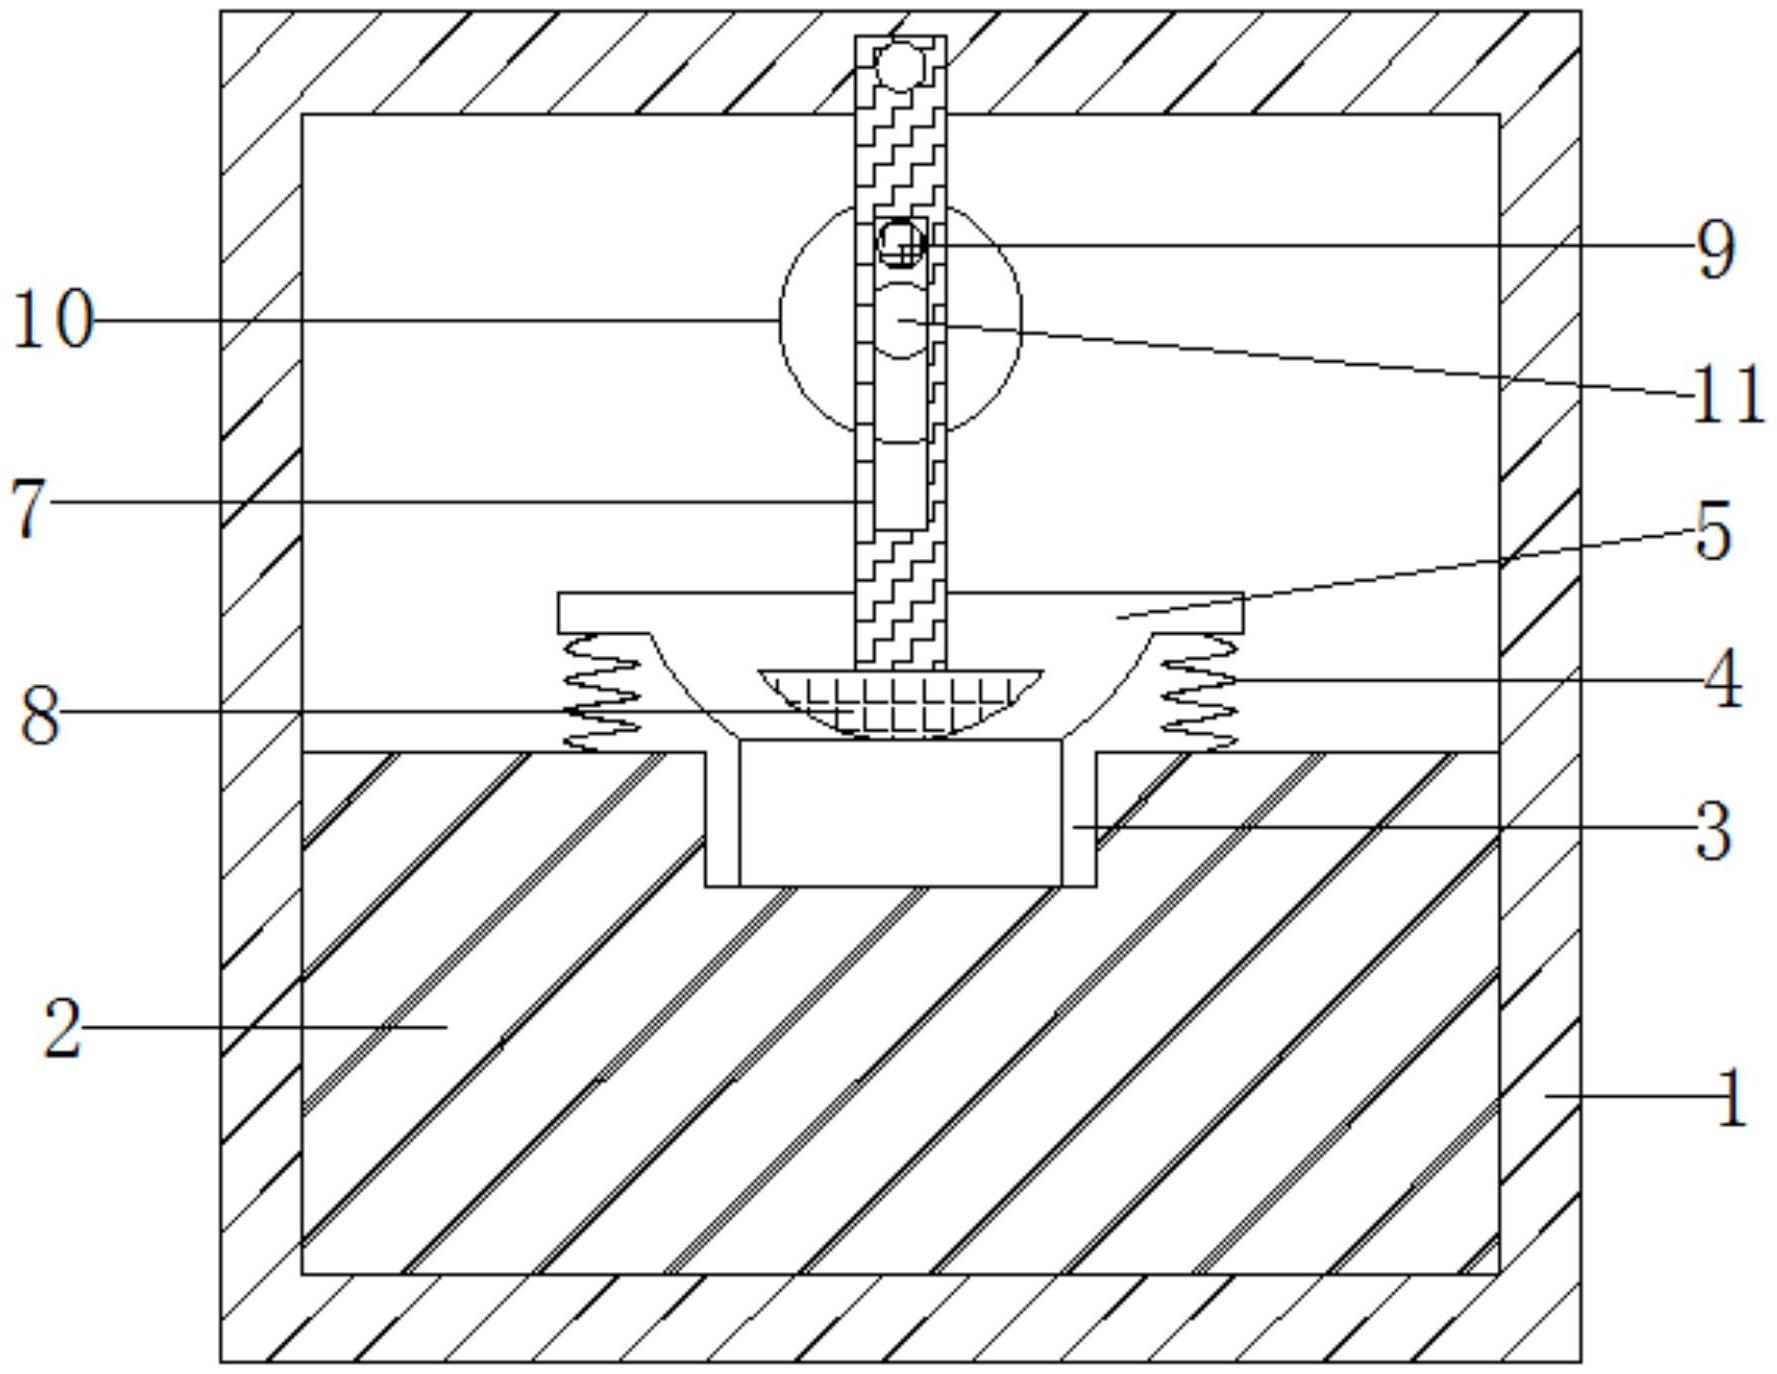 一种连体式硅橡胶按键耐磨测试装置专利图